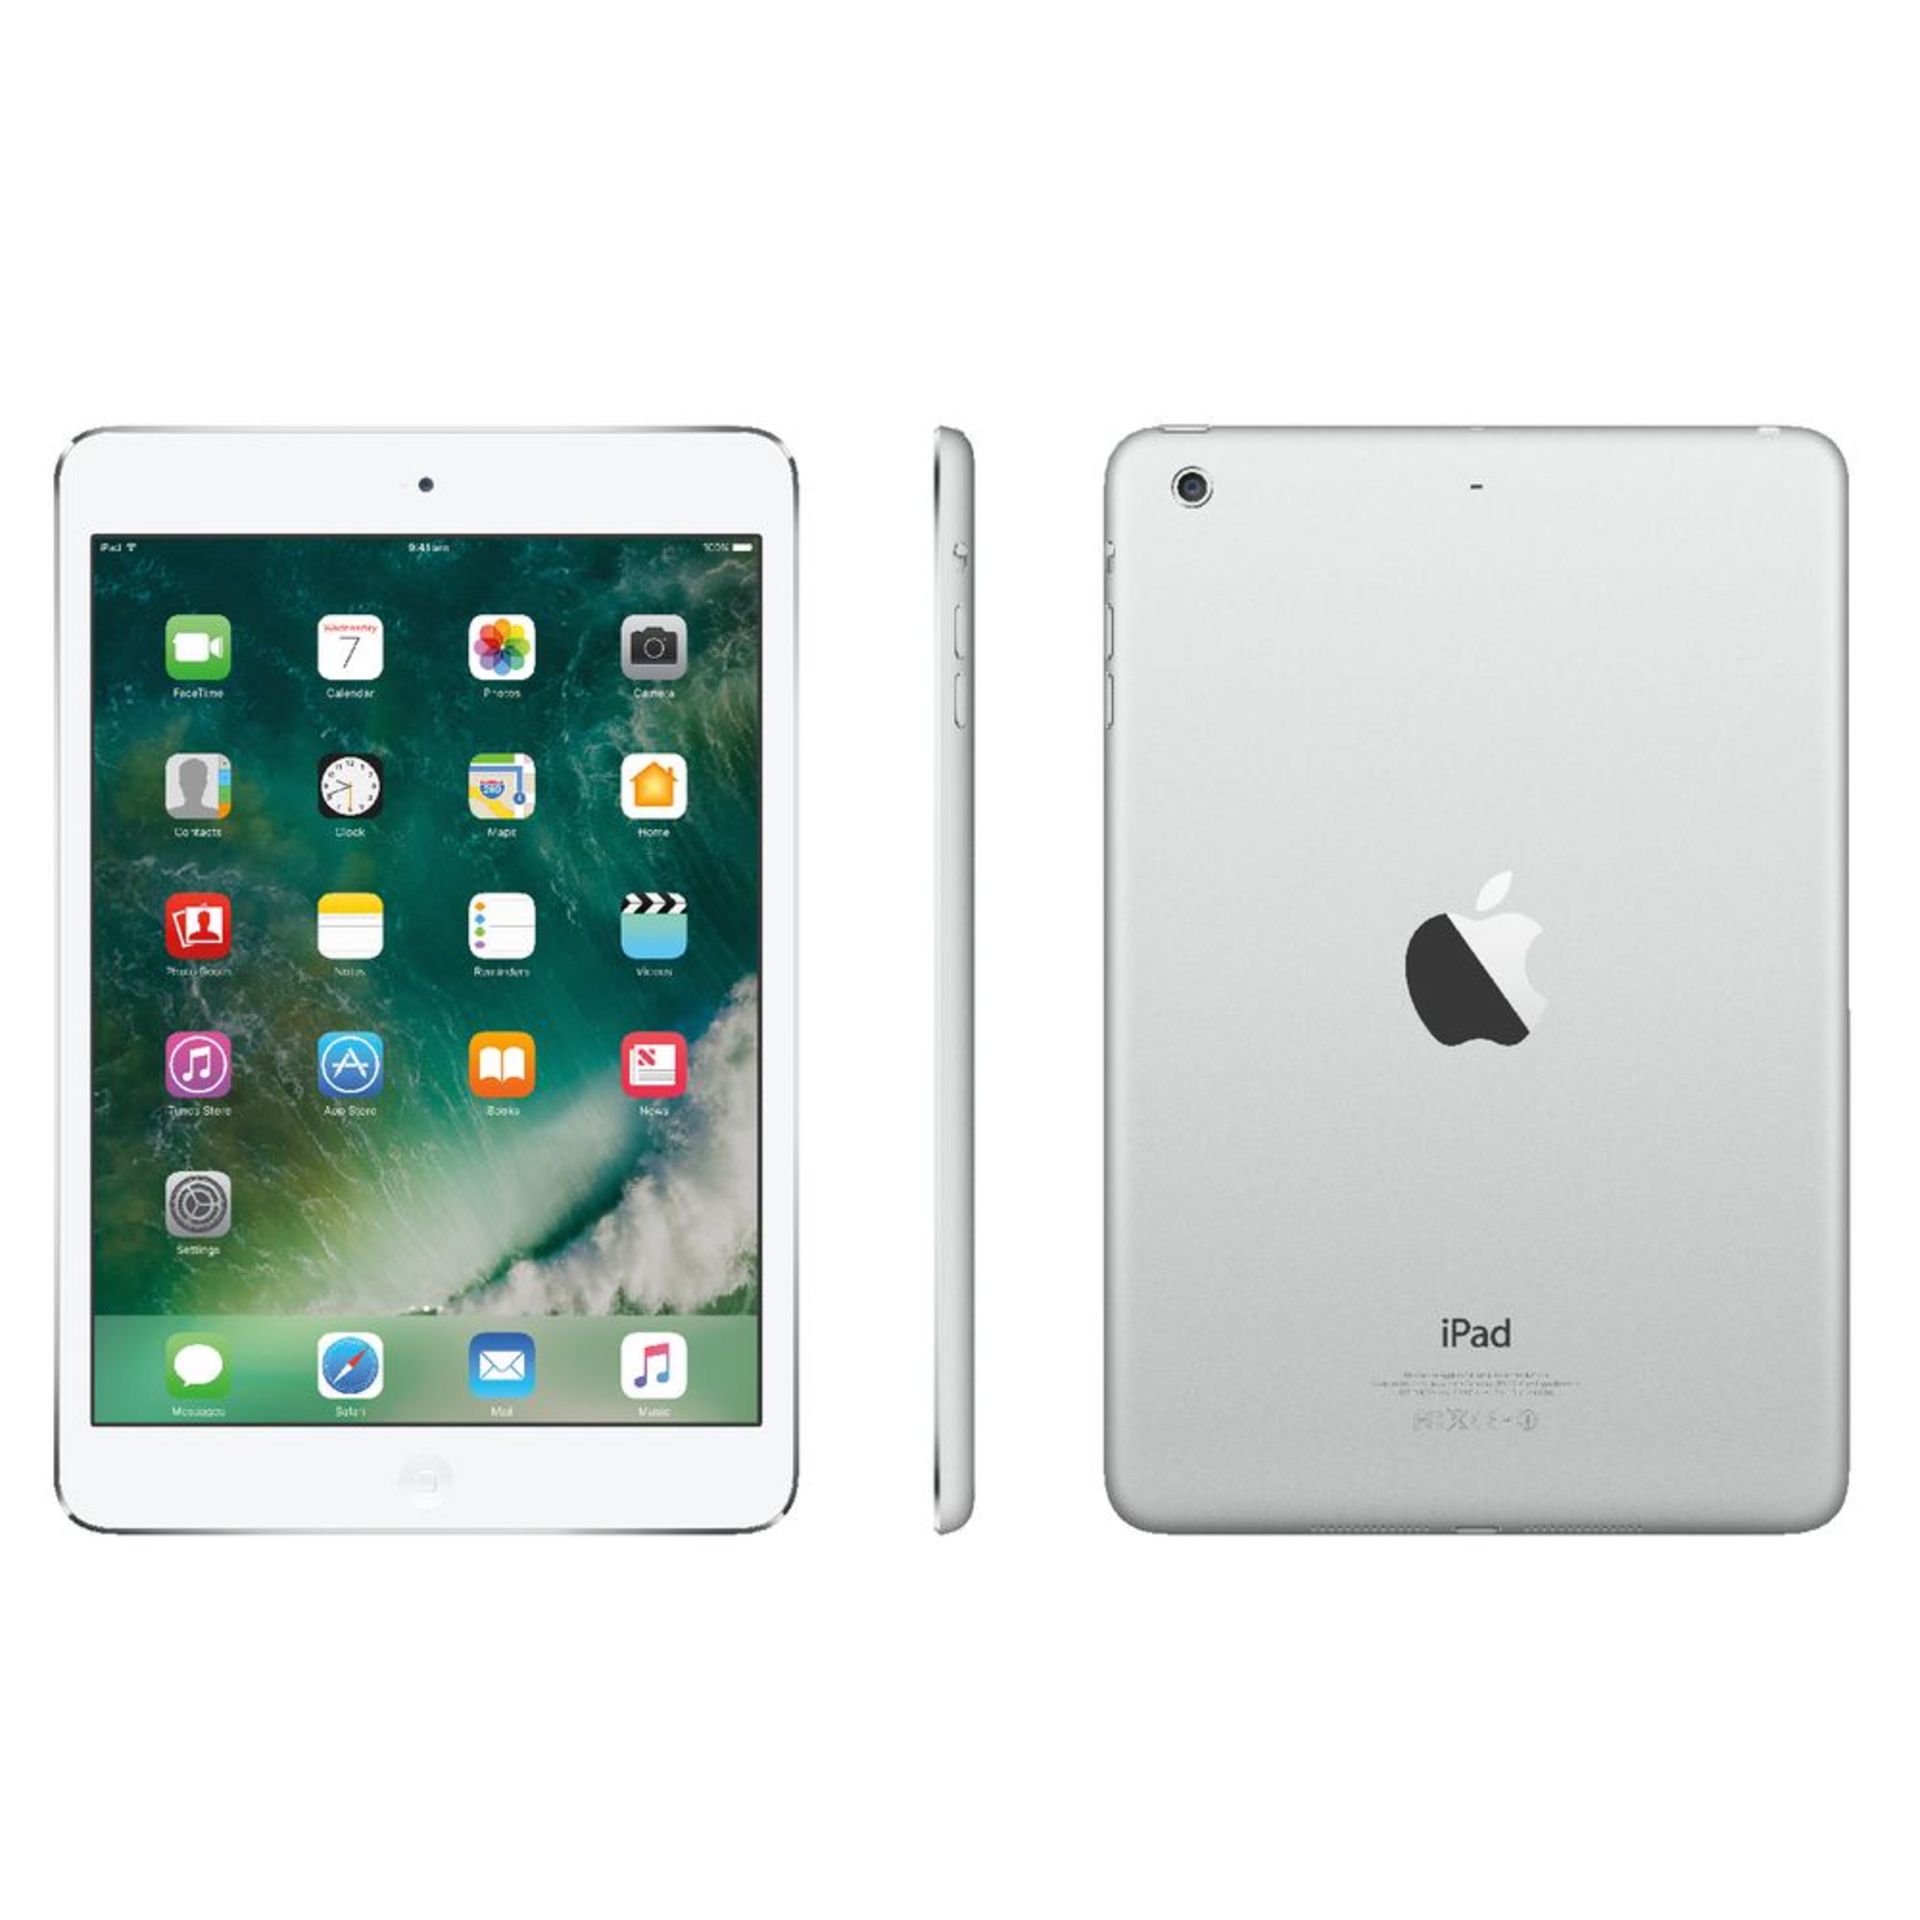 V Grade B Apple iPad Mini 2 16GB Silver - with Original box and accessories